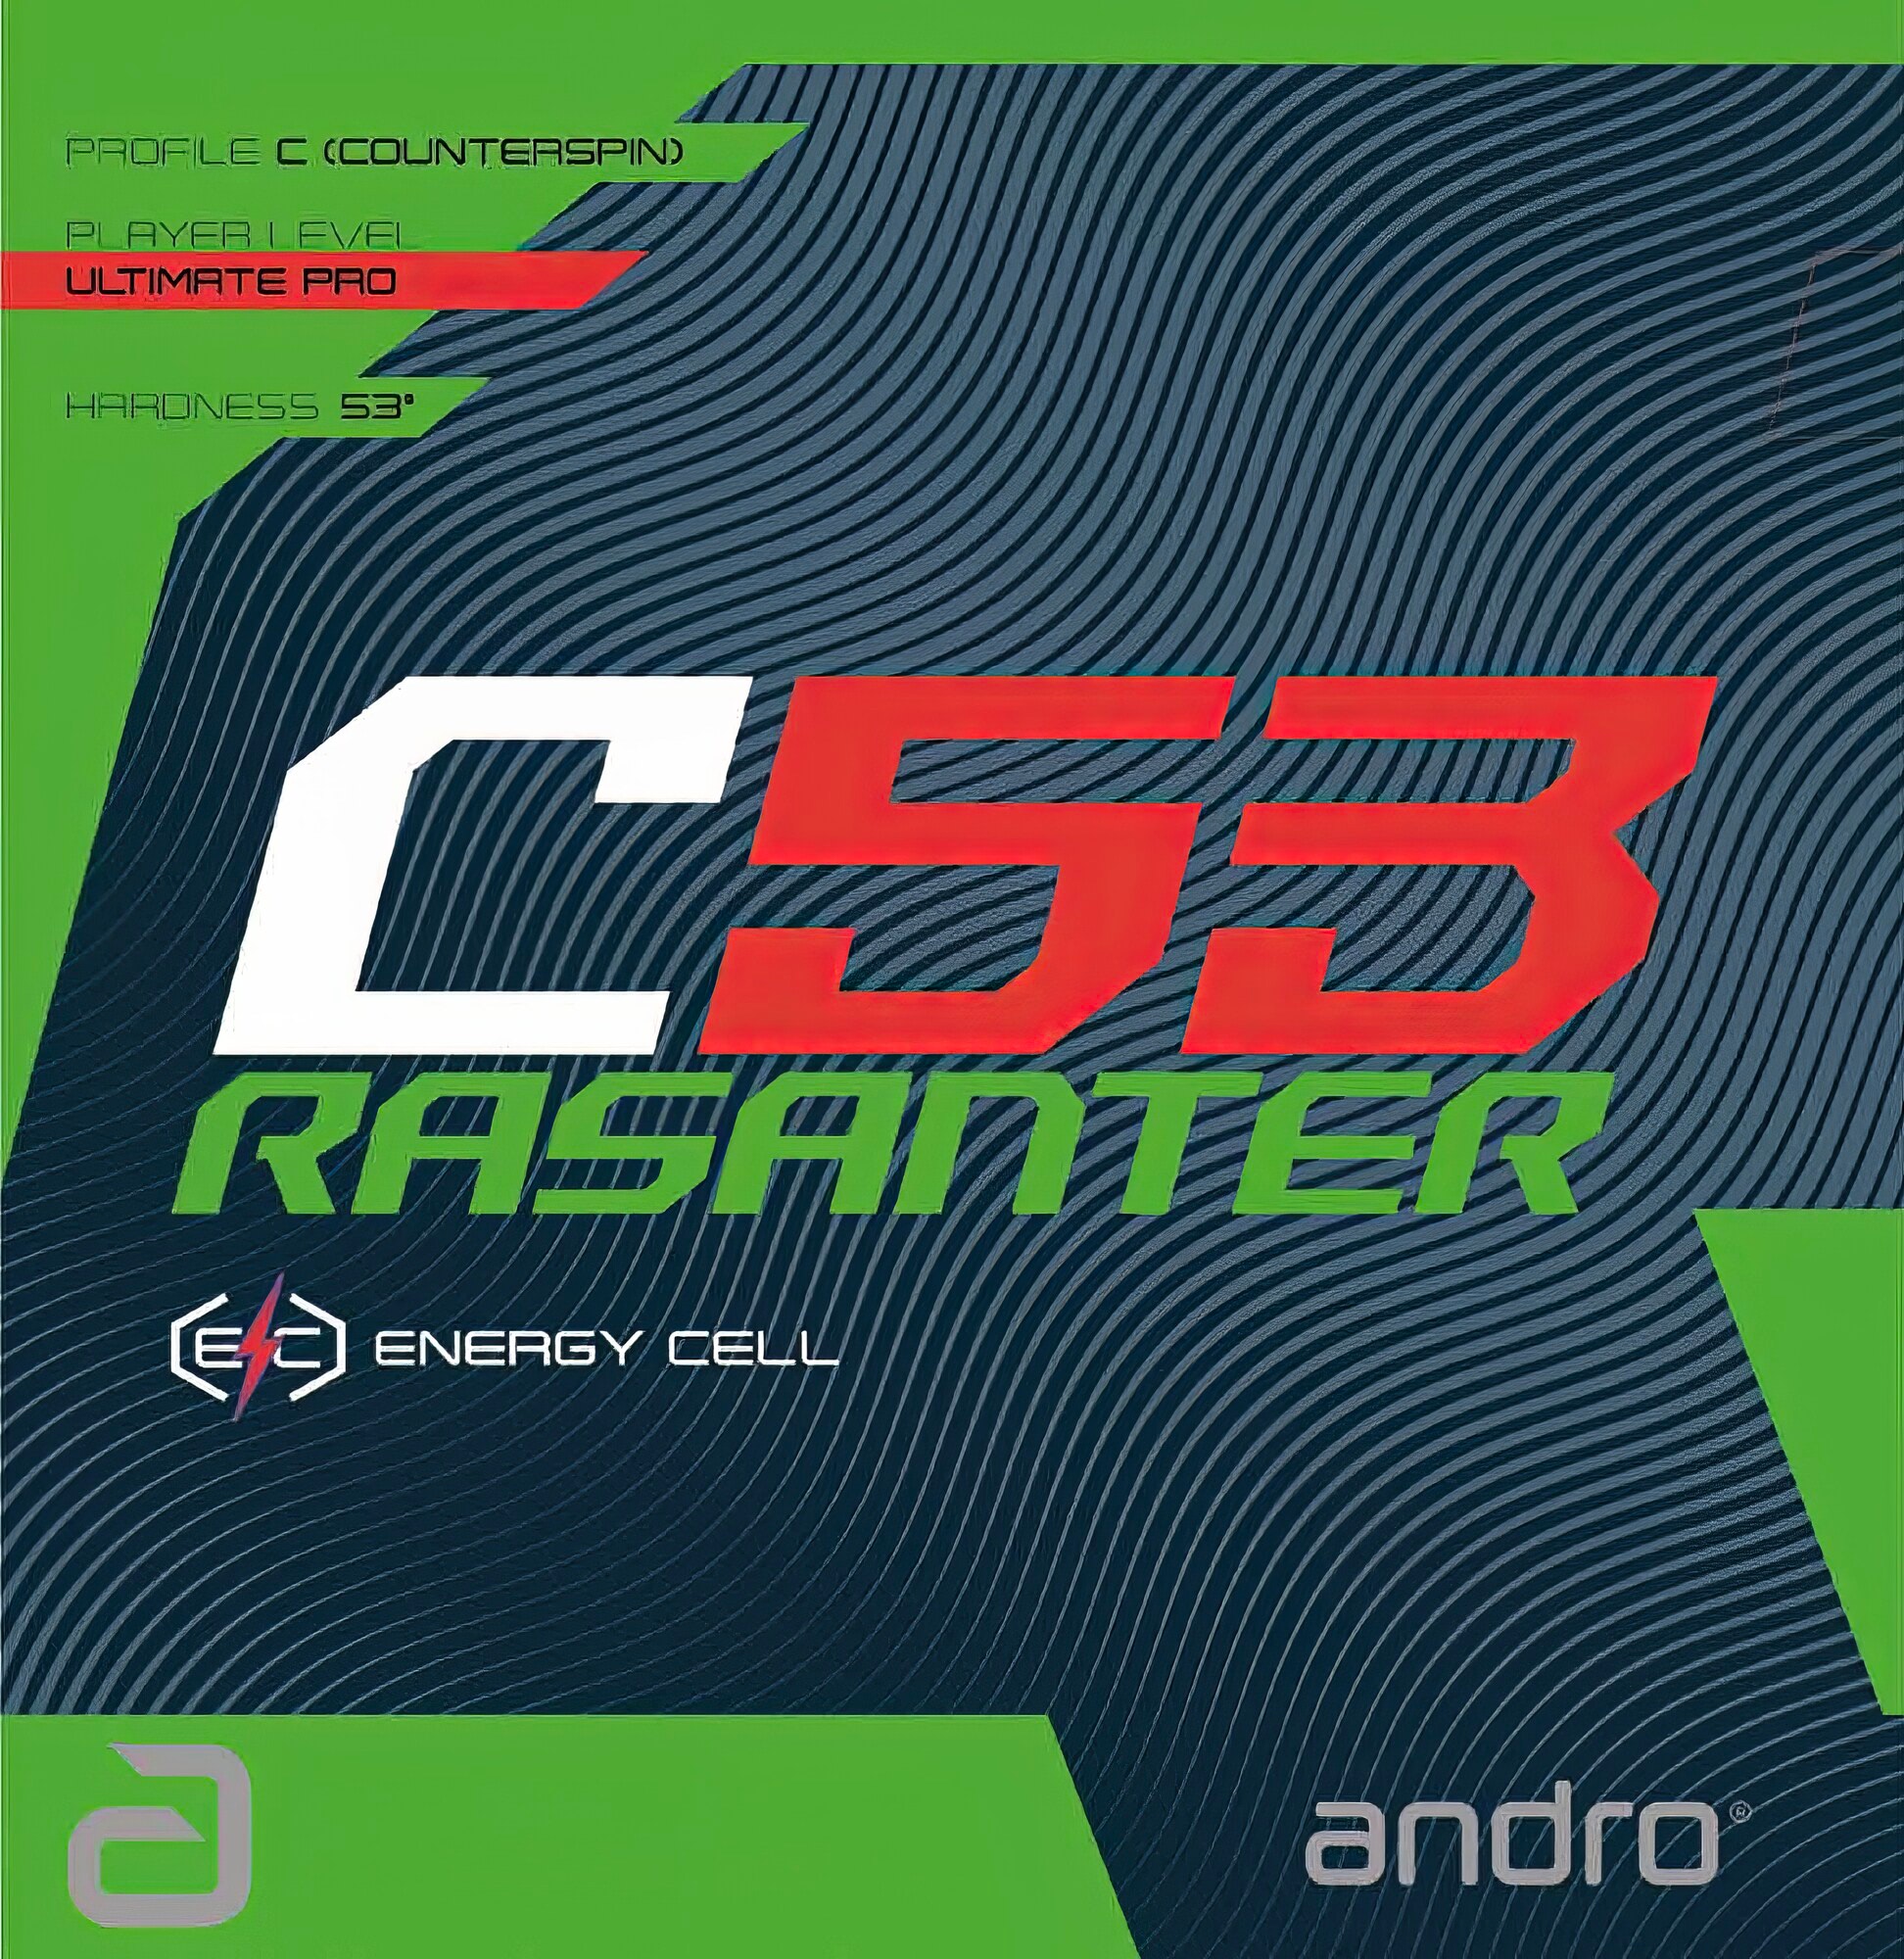 Andro Rasanter C53